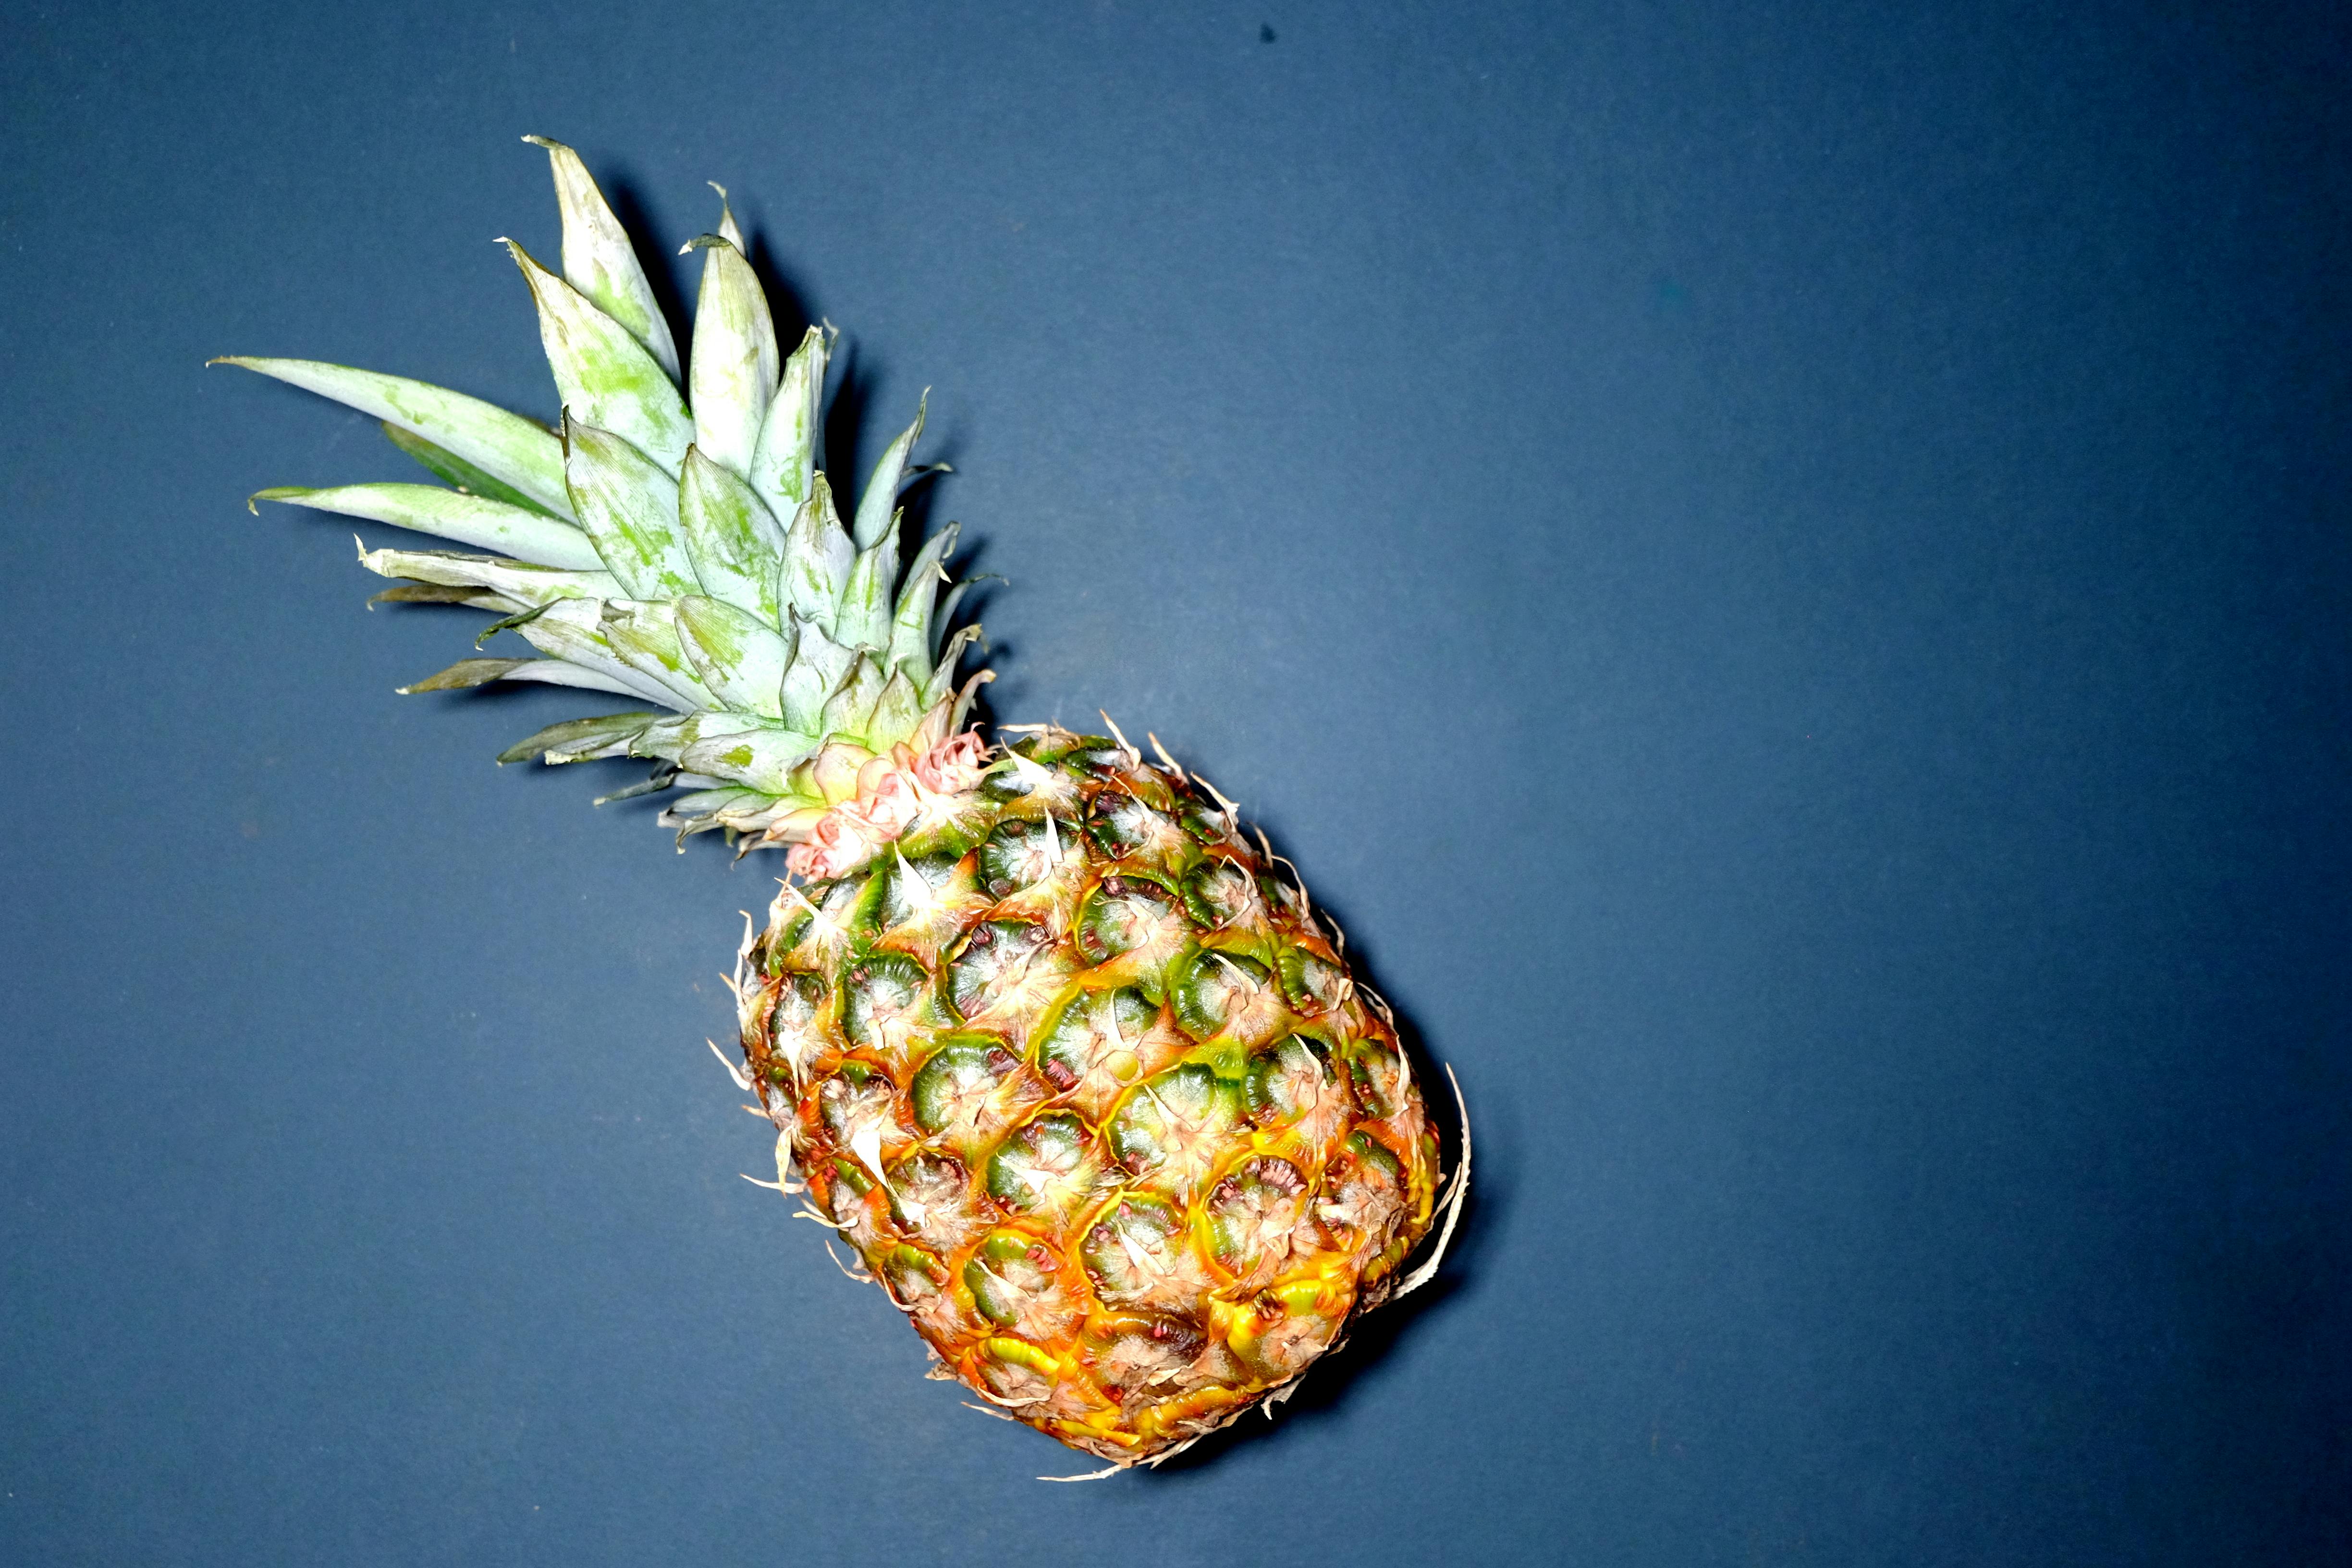 Kostenloses Foto zum Thema: ananas, essen, frische